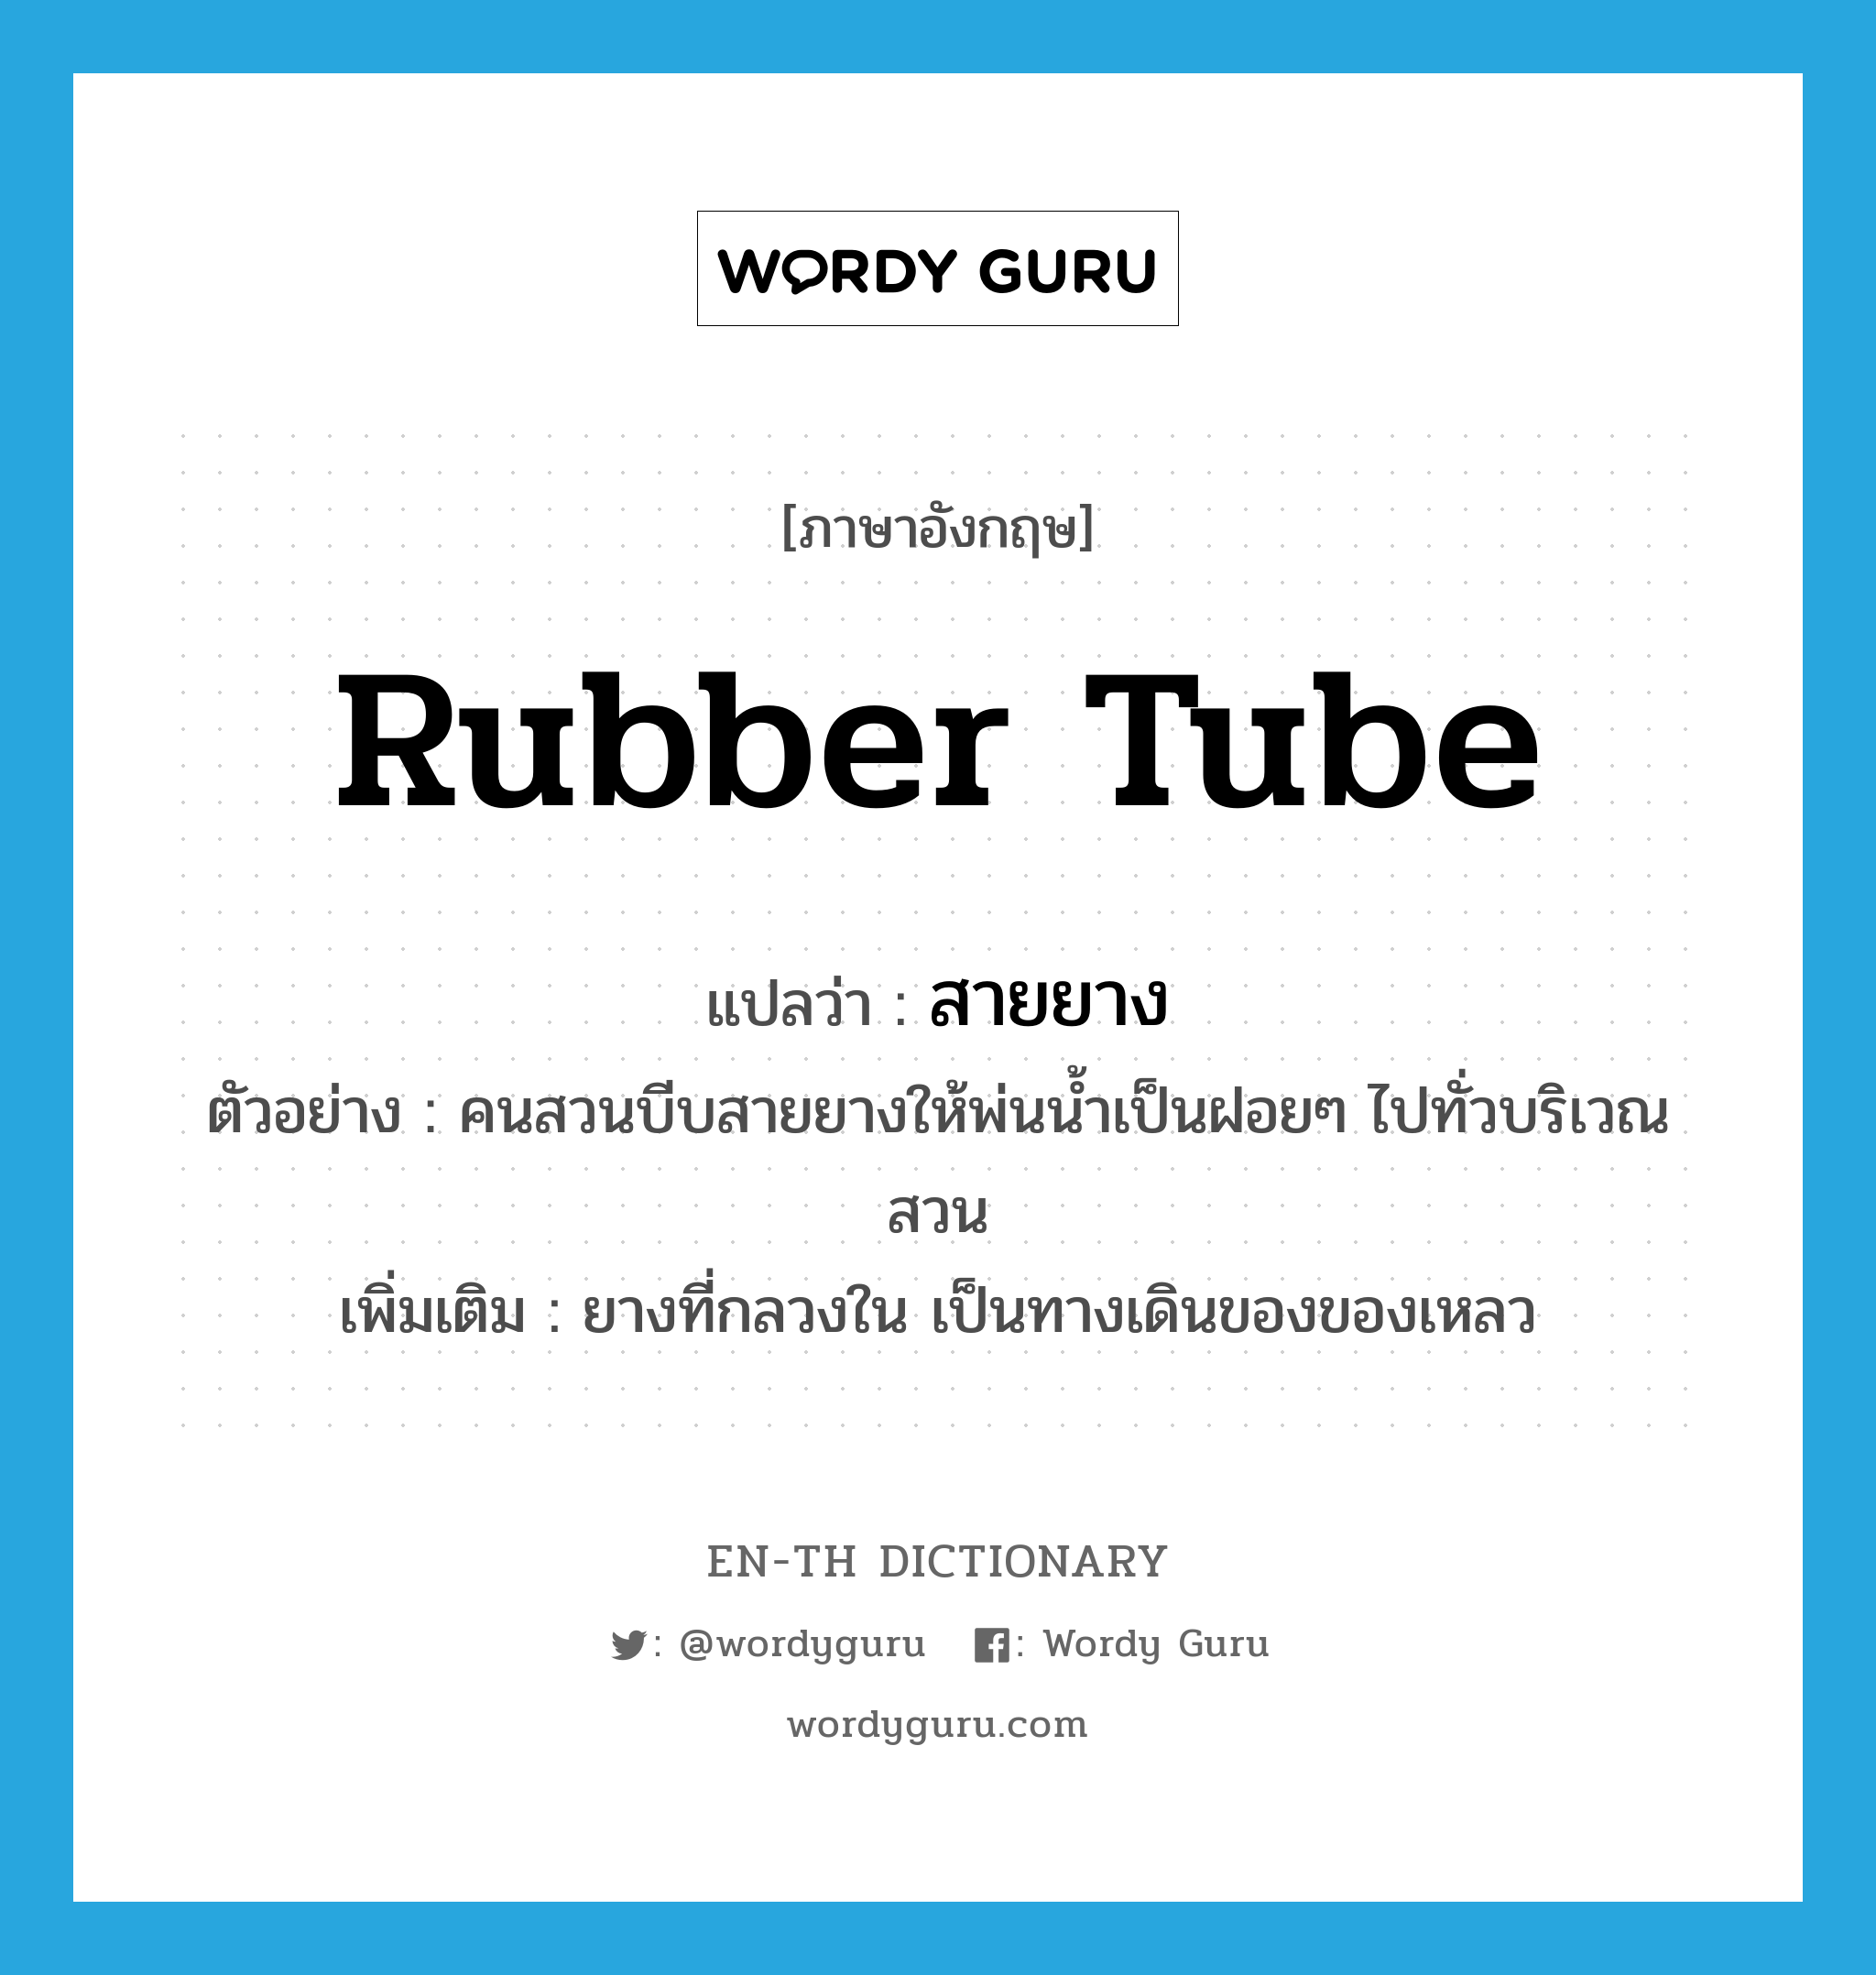 rubber tube แปลว่า?, คำศัพท์ภาษาอังกฤษ rubber tube แปลว่า สายยาง ประเภท N ตัวอย่าง คนสวนบีบสายยางให้พ่นน้ำเป็นฝอยๆ ไปทั่วบริเวณสวน เพิ่มเติม ยางที่กลวงใน เป็นทางเดินของของเหลว หมวด N